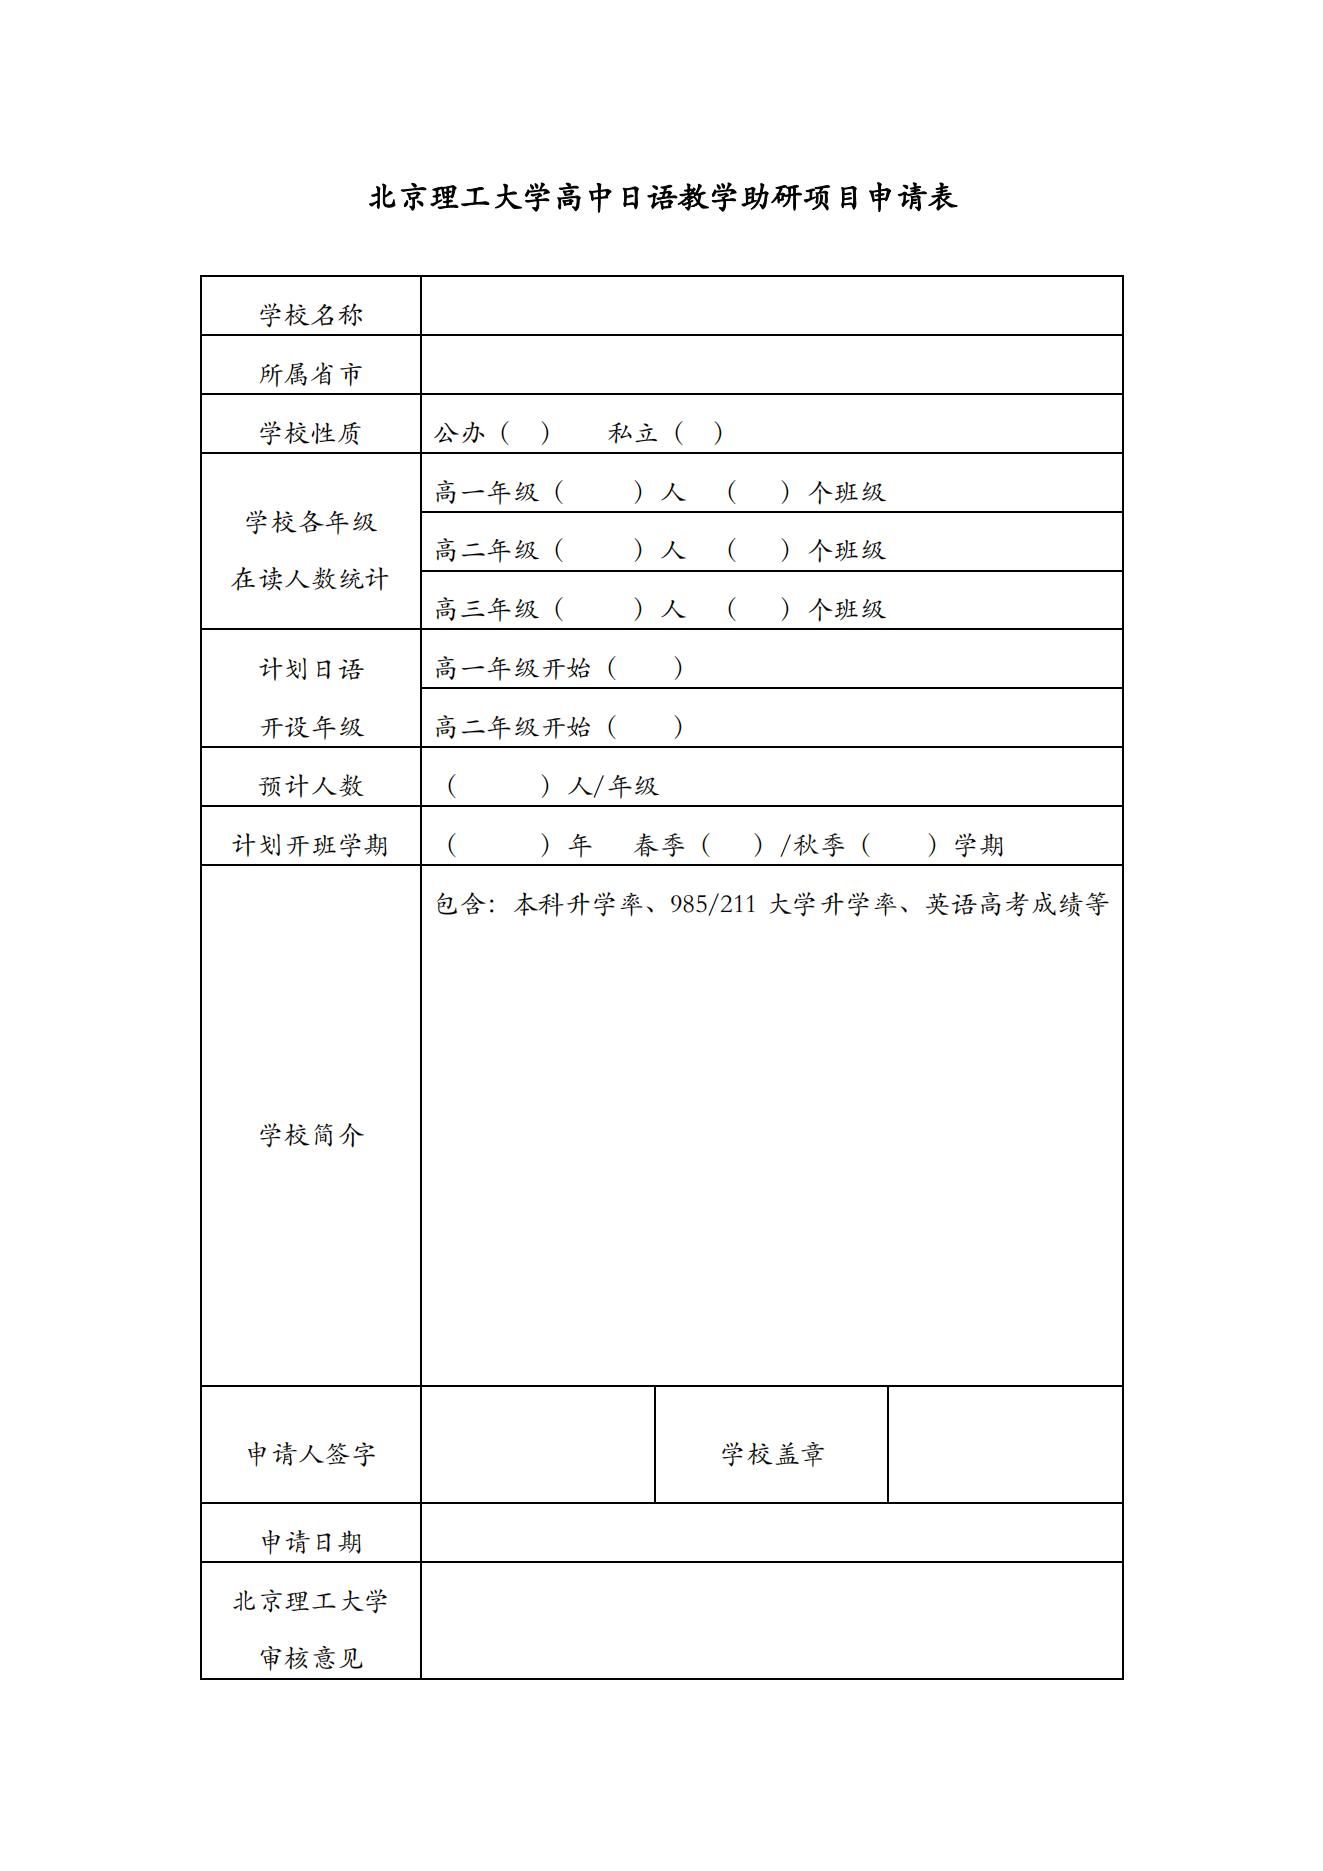 3北京理工大学高中日语教学助研项目申请表（高中版）_00.jpg